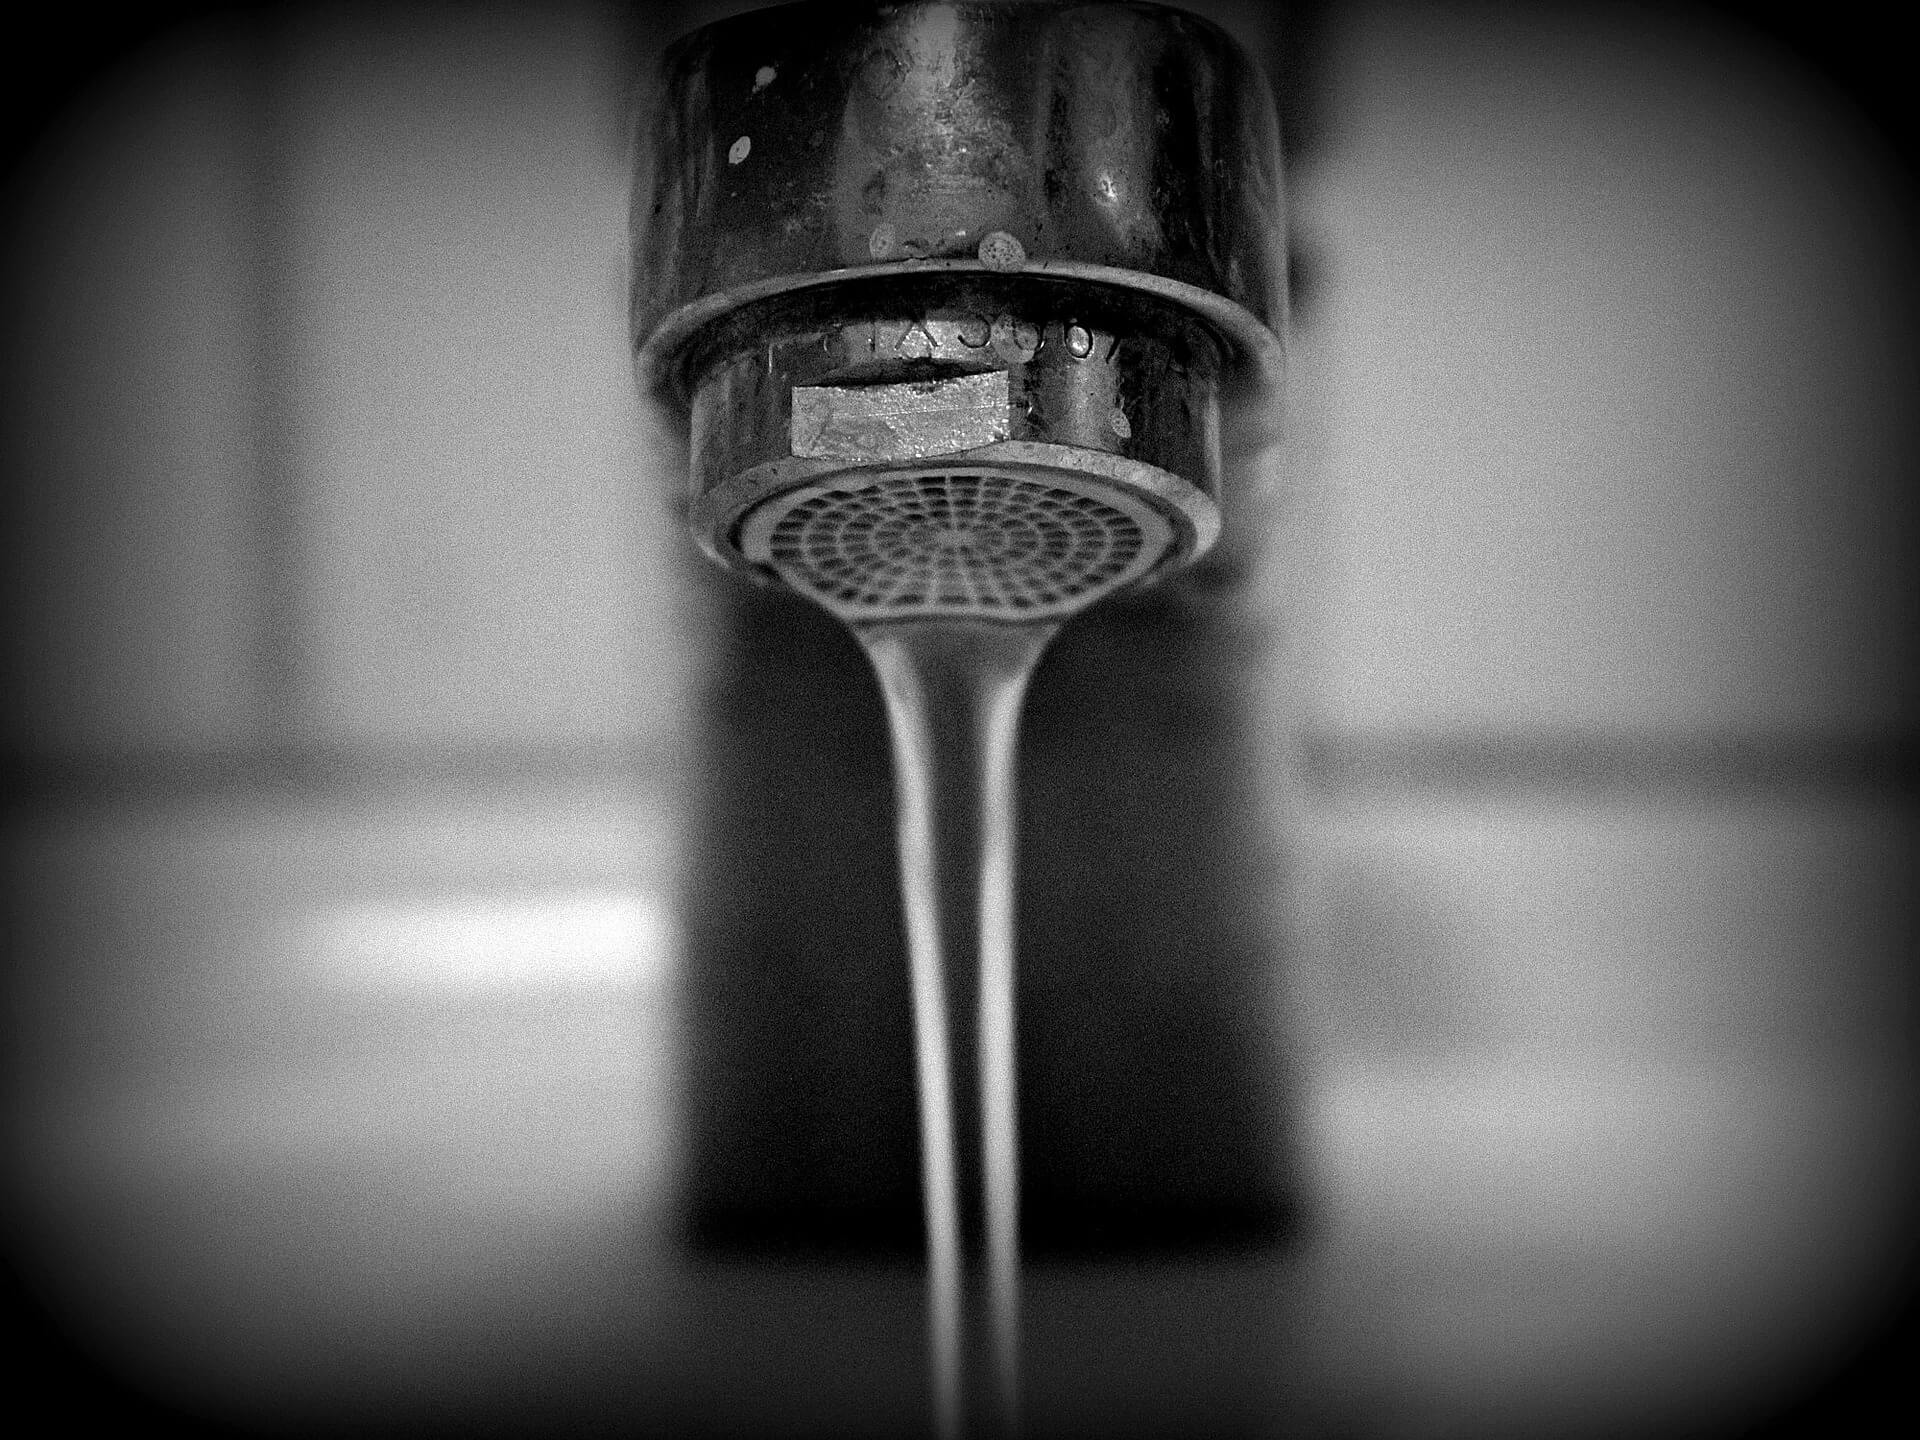 faucet-686958_1920